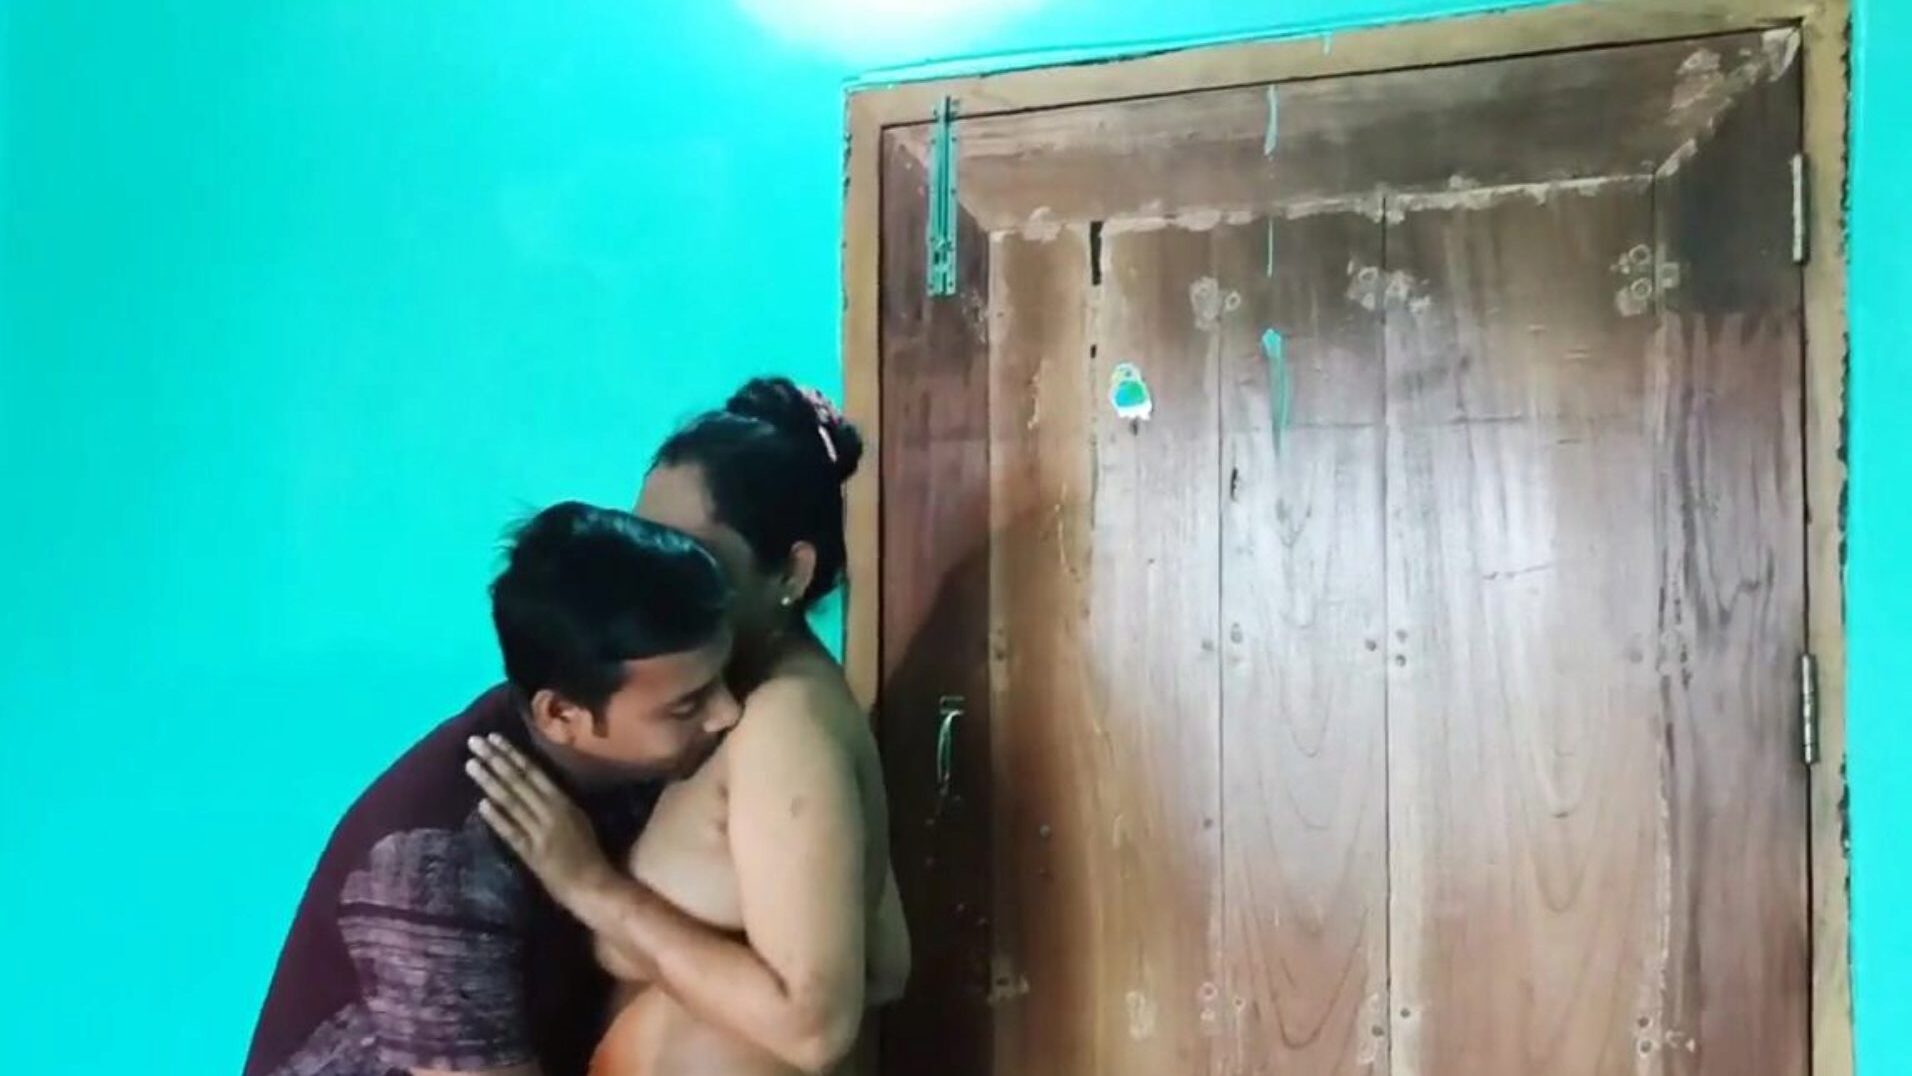 Desi bengalski sex video nagi, darmowe azjatyckie porno 6c: xHamster oglądaj Desi bengalski sex video nagi film na xHamster, najgrubszą stronę internetową z kanałami HD z mnóstwem darmowych azjatyckich sex xxn i analnych filmów porno